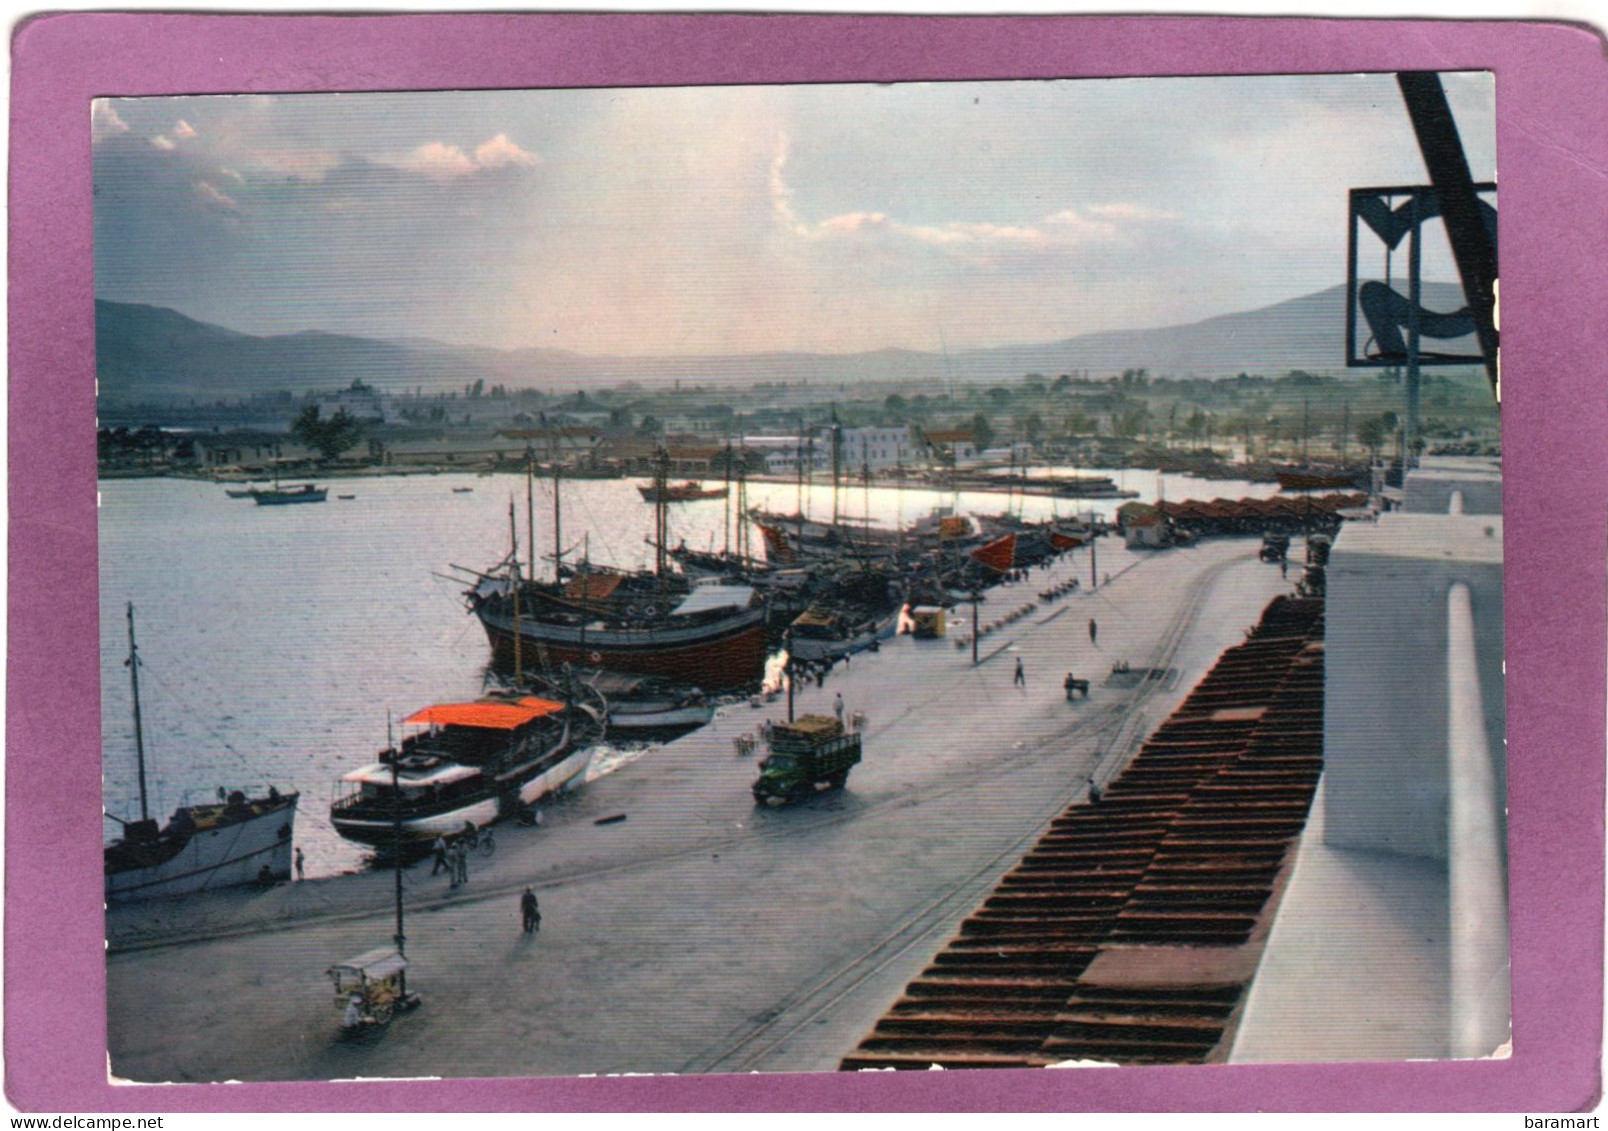 ΒΟΛΟΣ  'Aπό Τό λιμάνι  VOLOS Vue Du Port View Of The Harbour  Der Hafen - Grèce